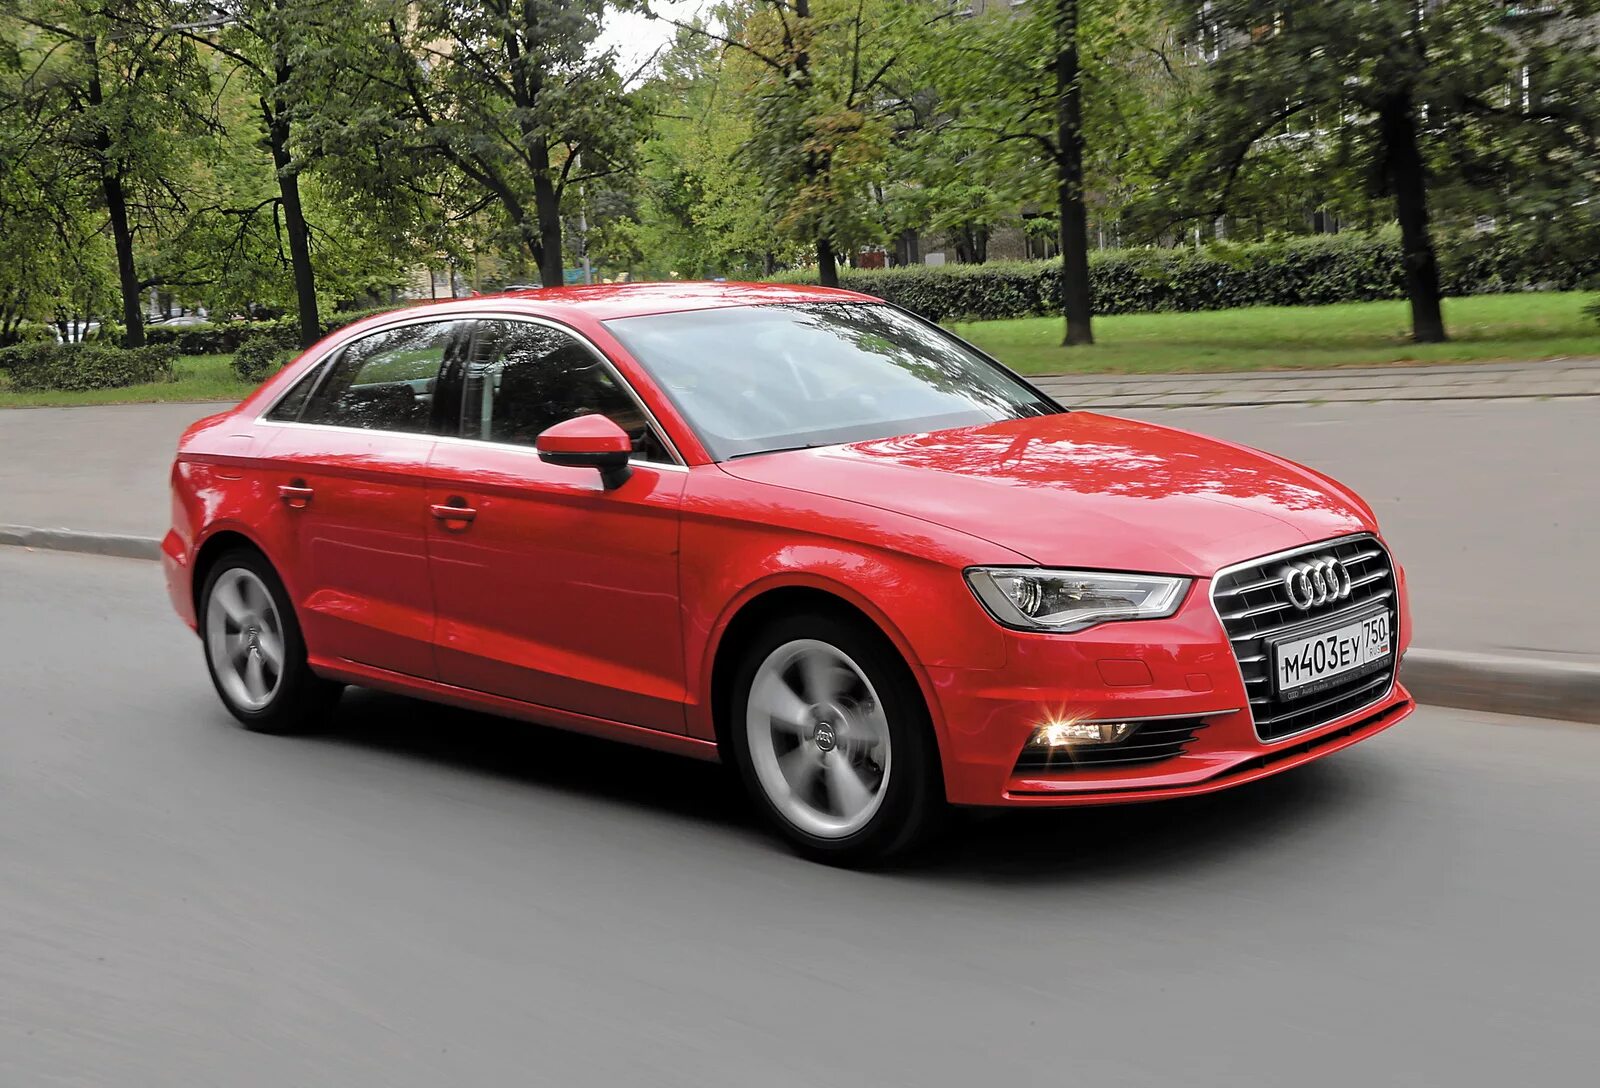 Ауди а4 купить новую. Audi a3 седан. Ауди а3 седан красная. Audi a3 2010. Ауди а3 седан 2010.